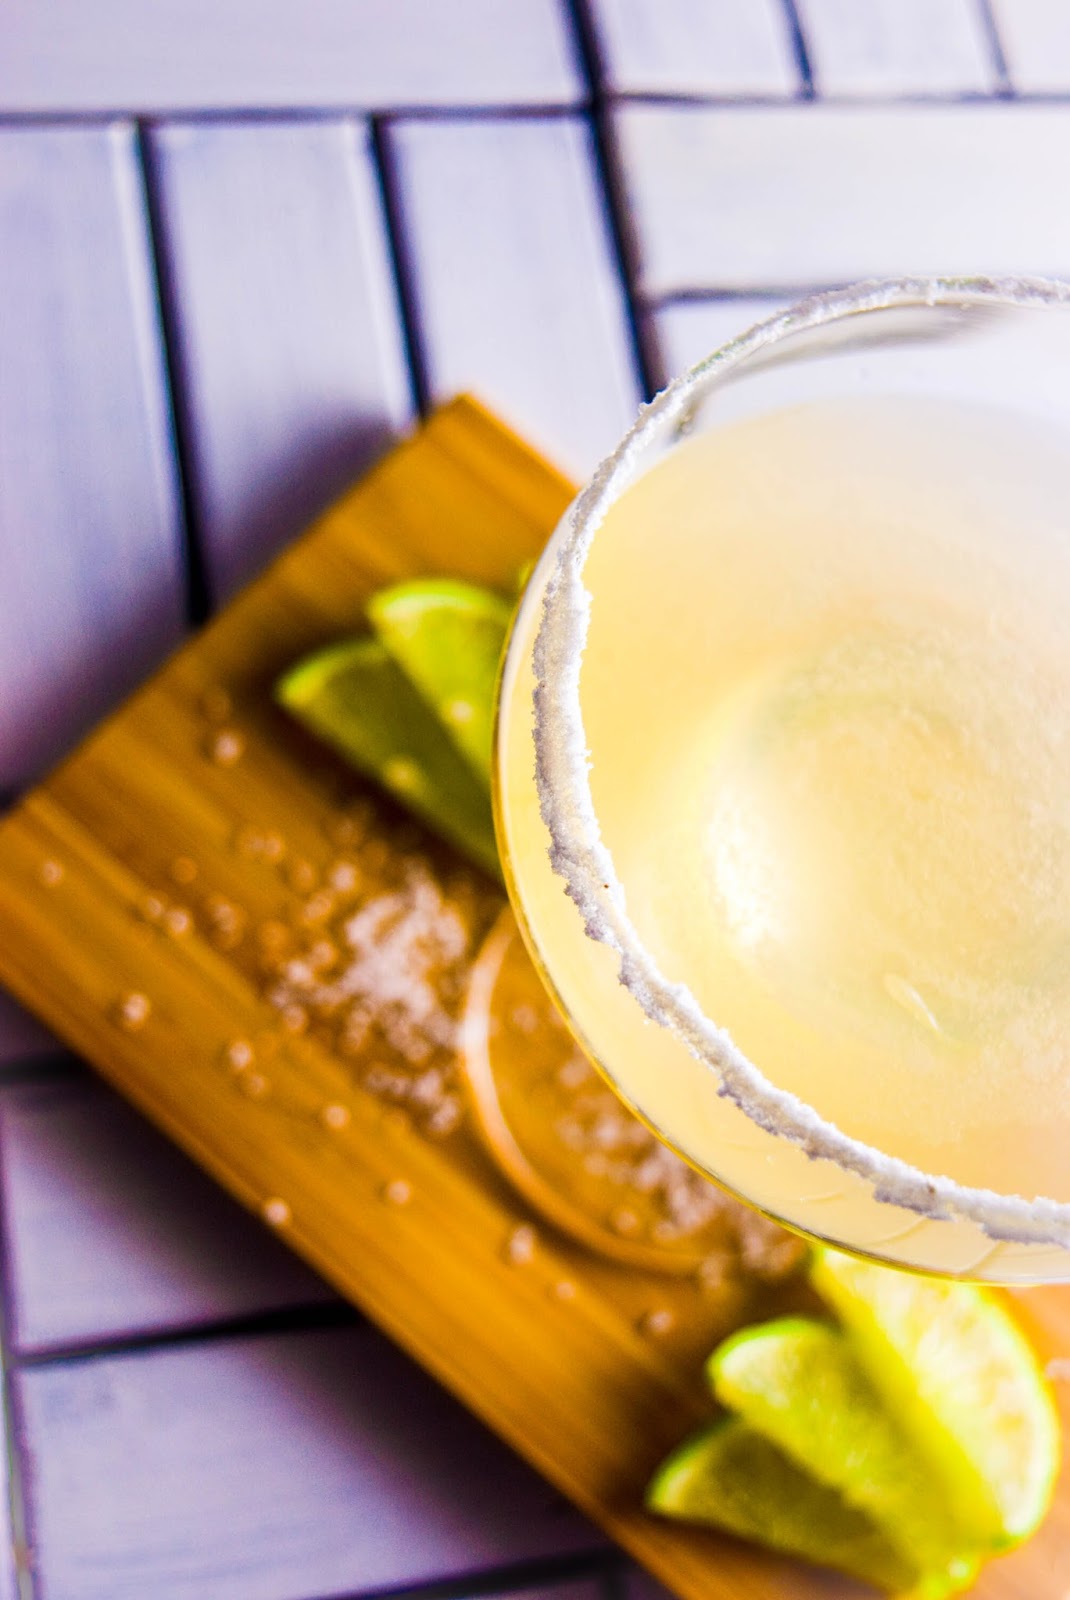 all about cocktails: Tequila, Zitrone und der Salzrand